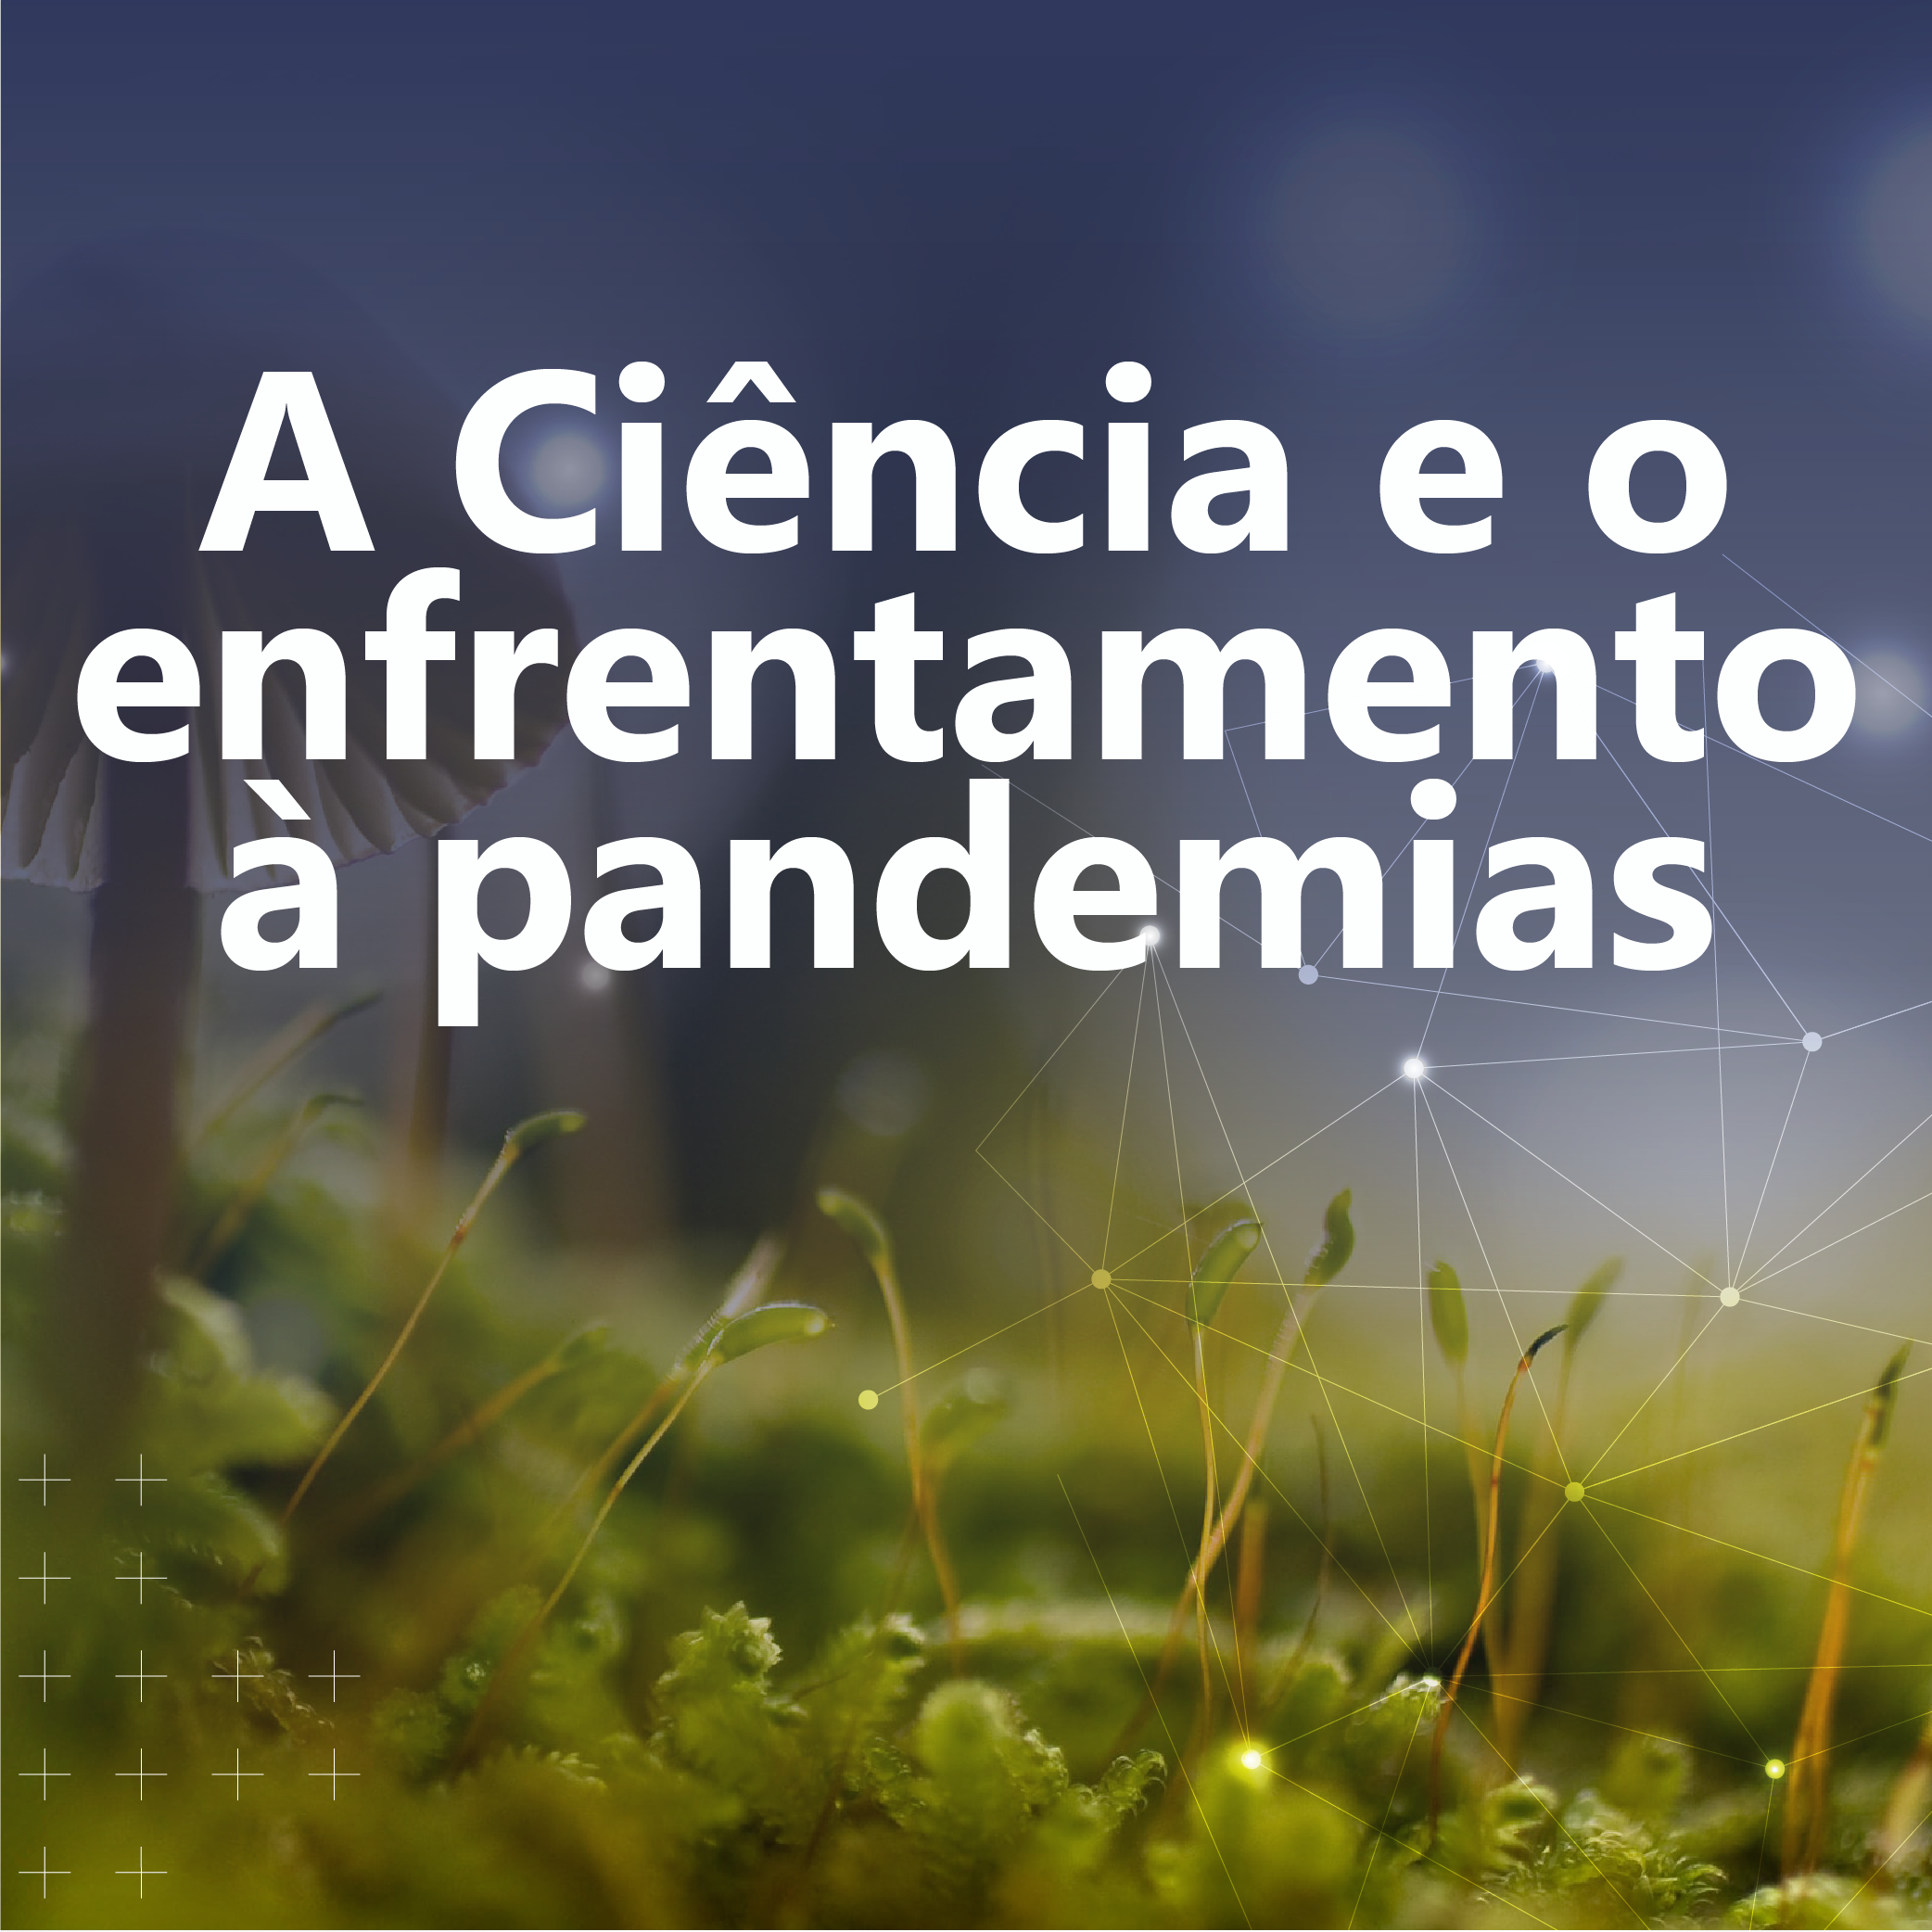 Tema geral: A ciência e o enfrentamento à pandemias